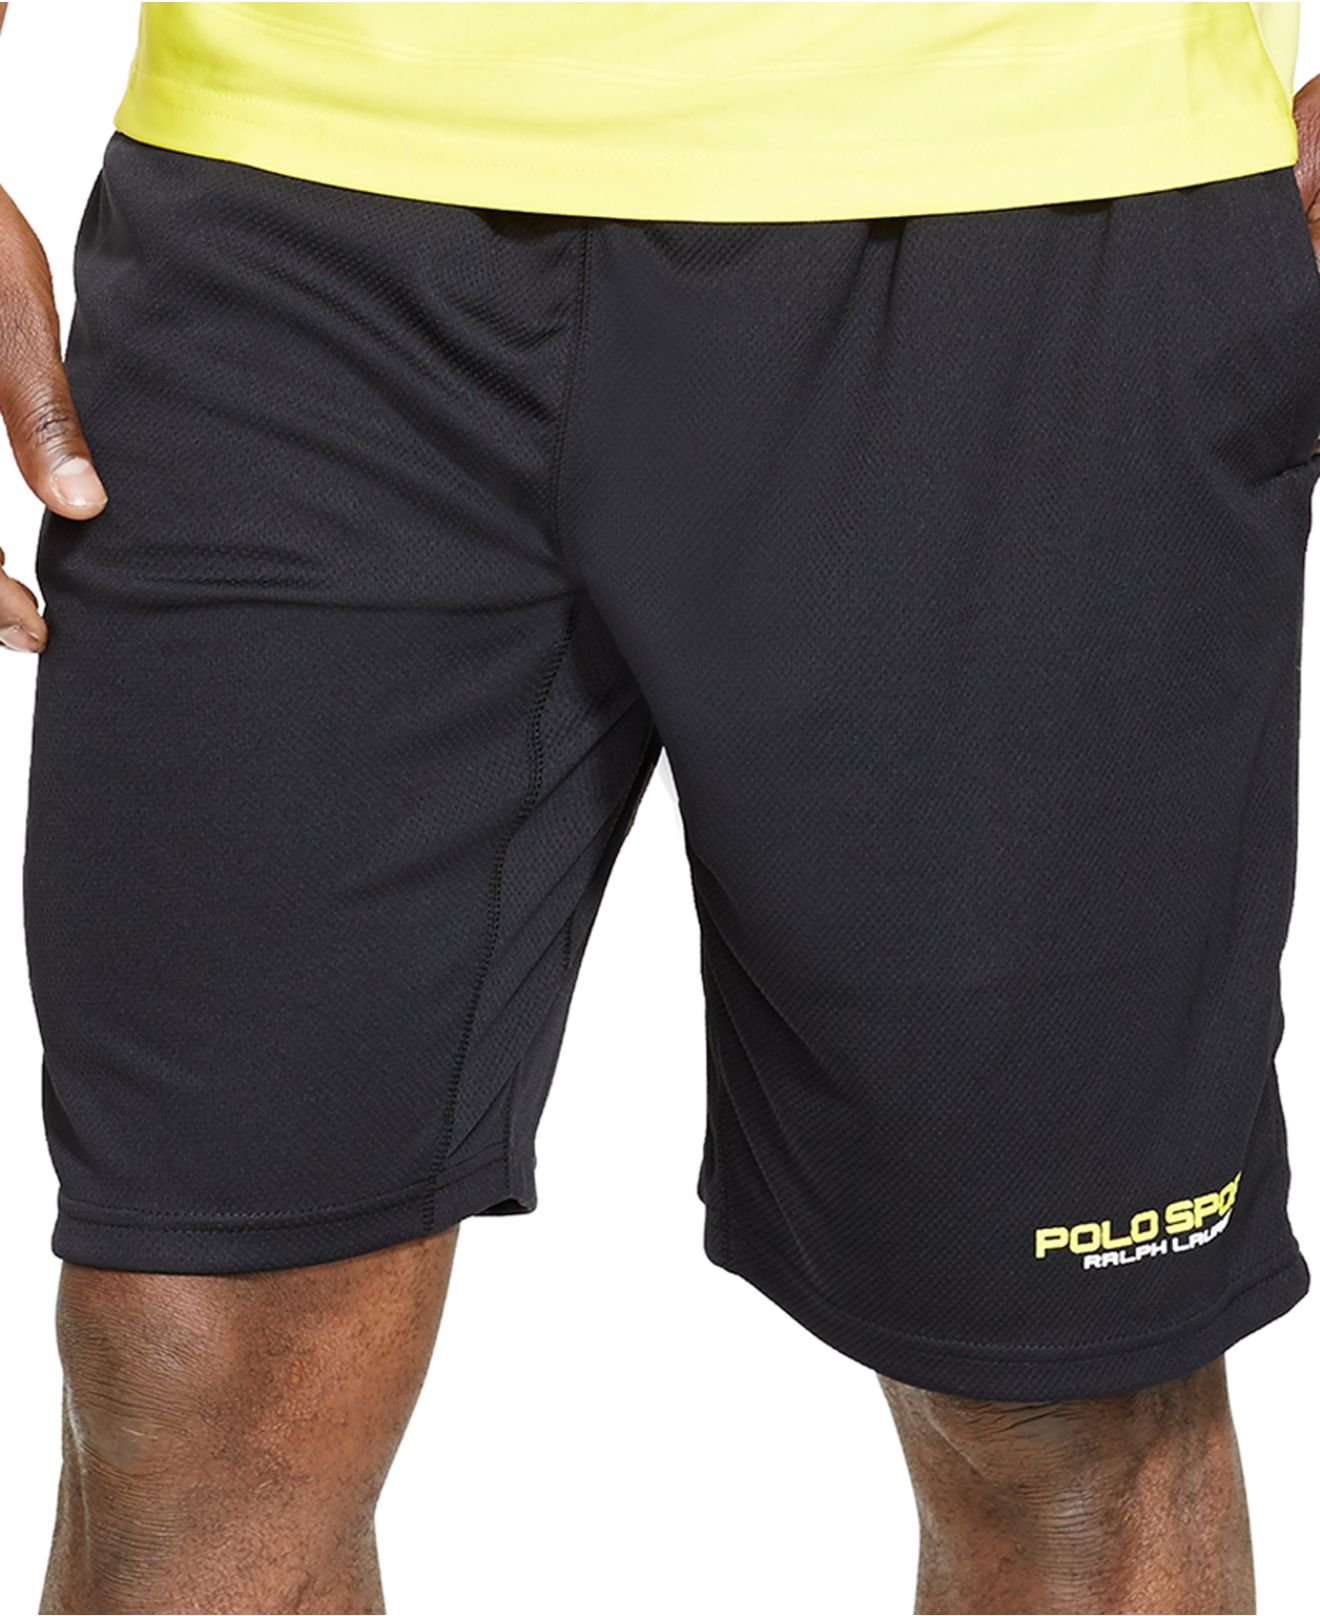 polo gym shorts